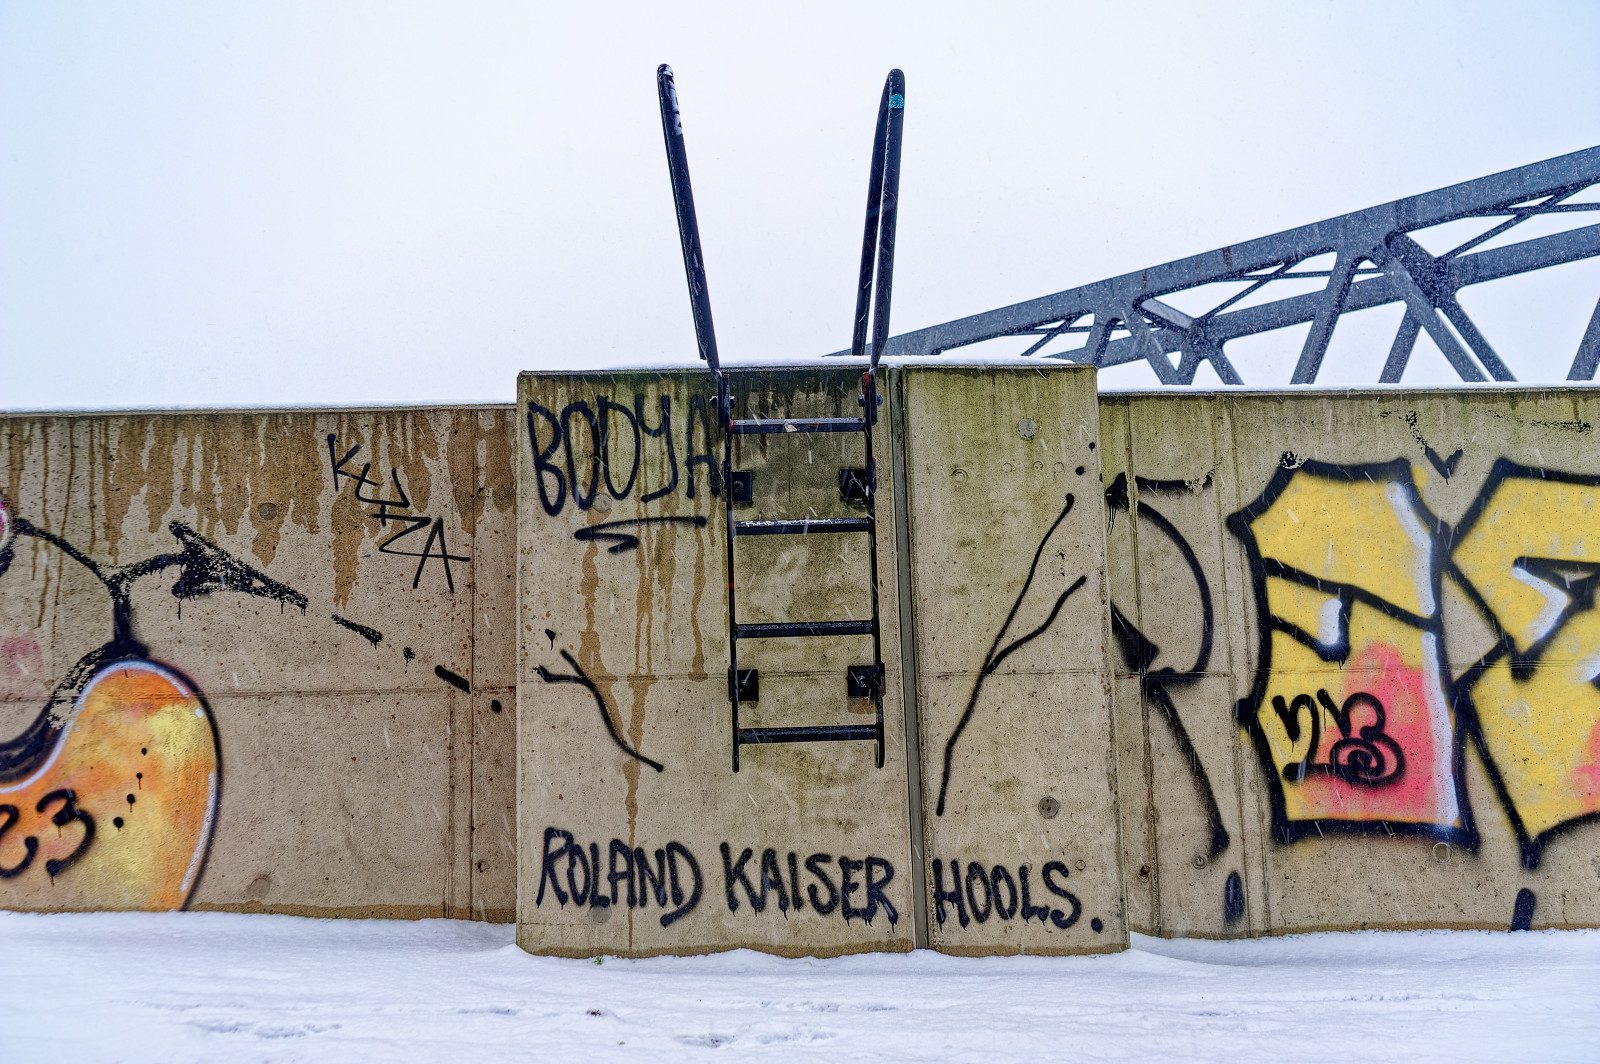 FlutSchutzWand mit einer kleinen schwarzen Leiter. Viele Tags von Graffiti Artists. Lesbar unter der Leiter: "Roland Kaiser Hools".